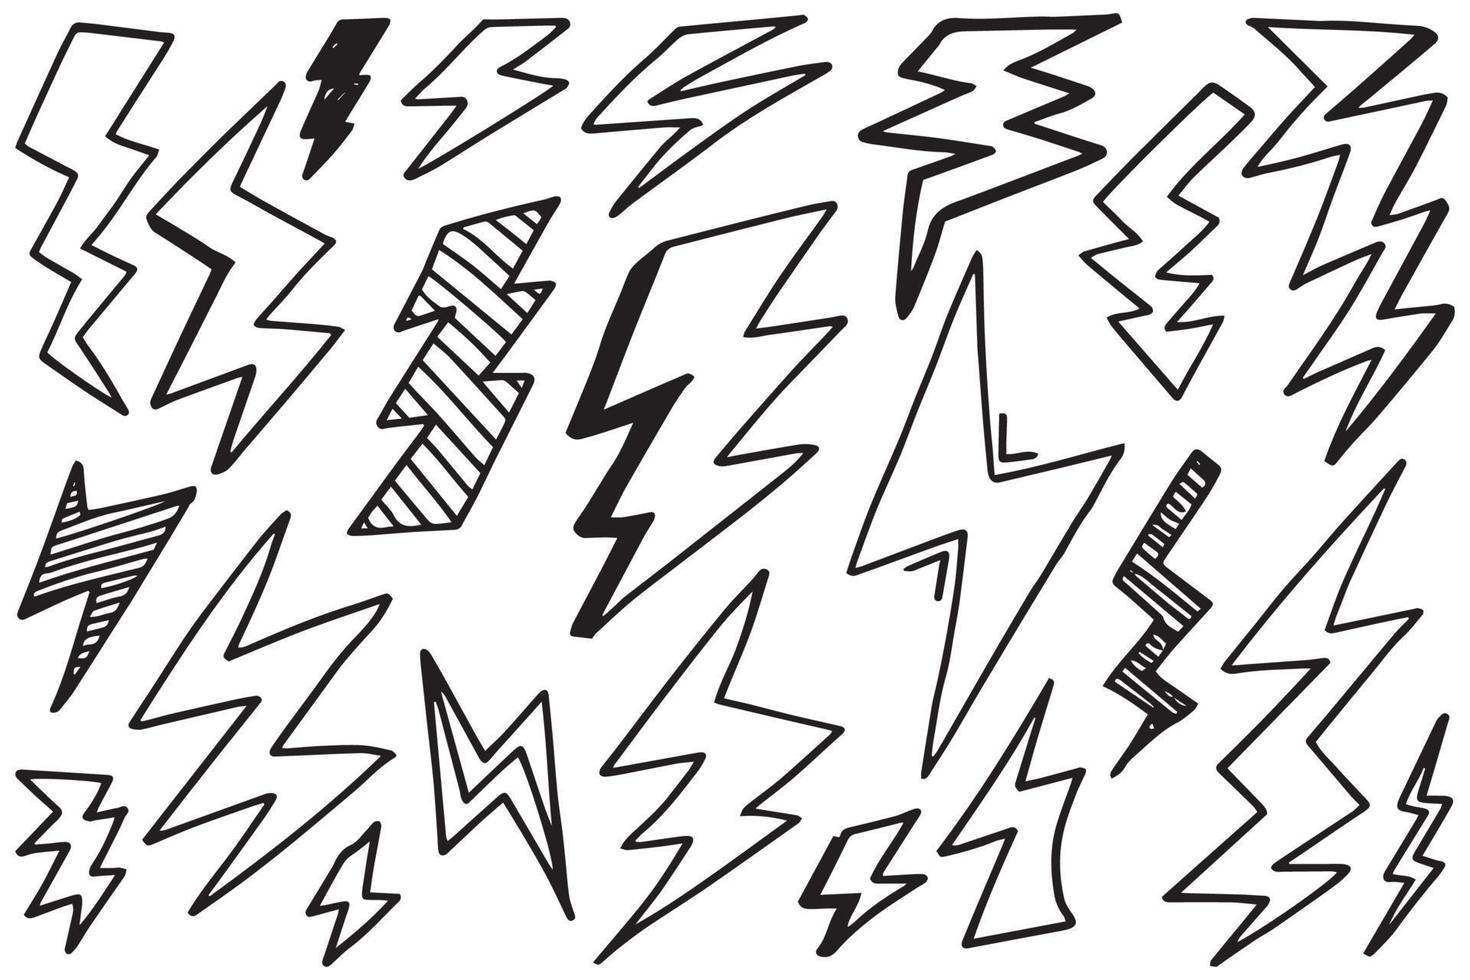 ensemble d'illustrations de croquis de symbole d'éclair électrique doodle vecteur dessinés à la main. icône de doodle de symbole de tonnerre.